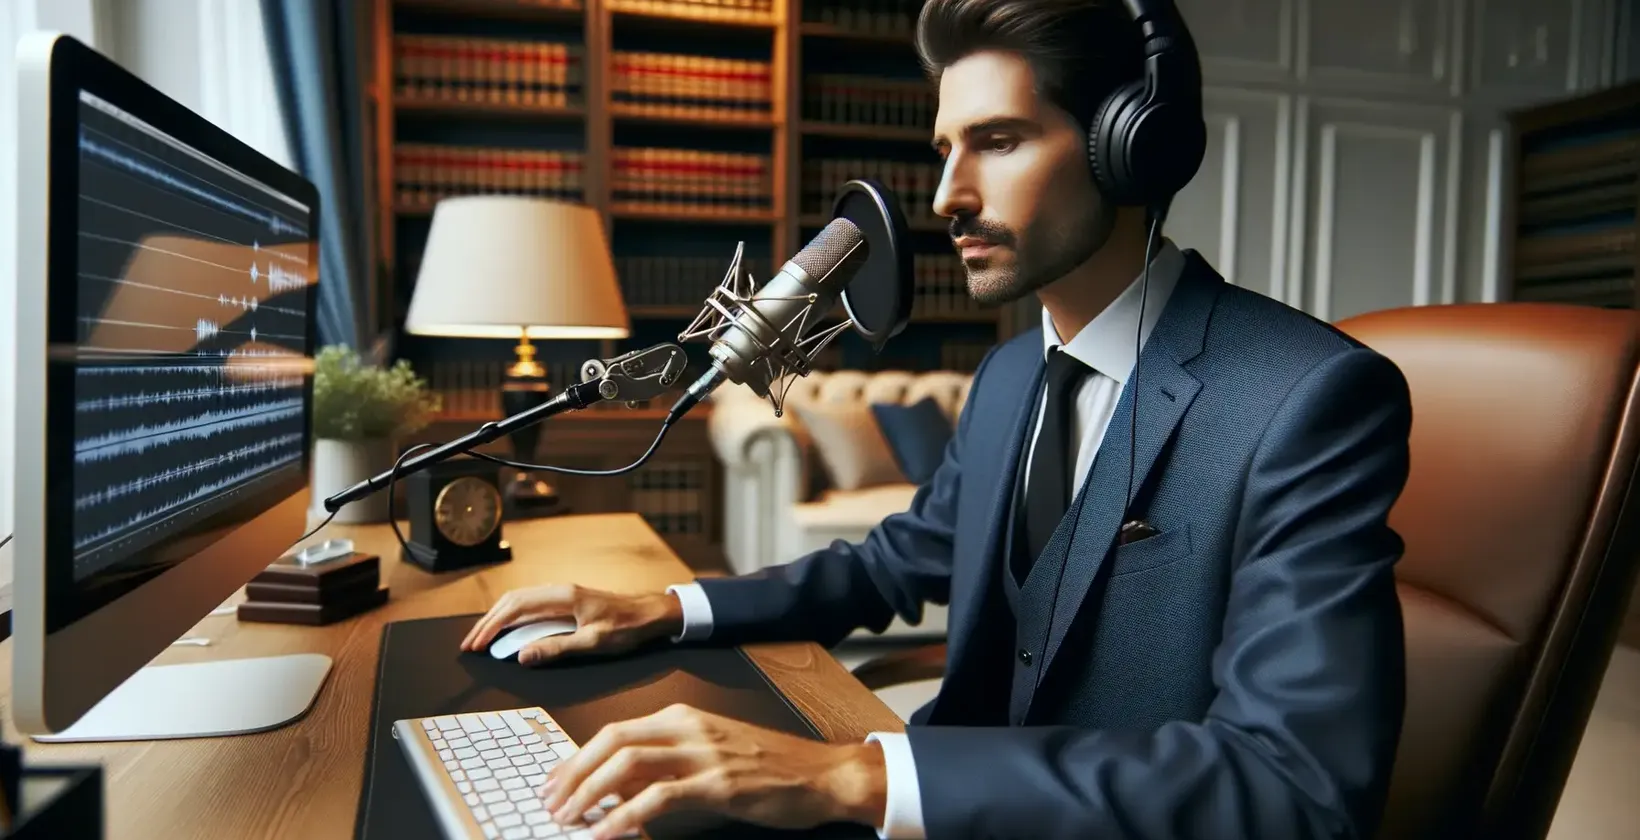 कानूनी रिकॉर्डिंग का विश्लेषण करने के लिए प्रतिलेखन सॉफ्टवेयर का उपयोग करने वाले मुकदमे में वकील।